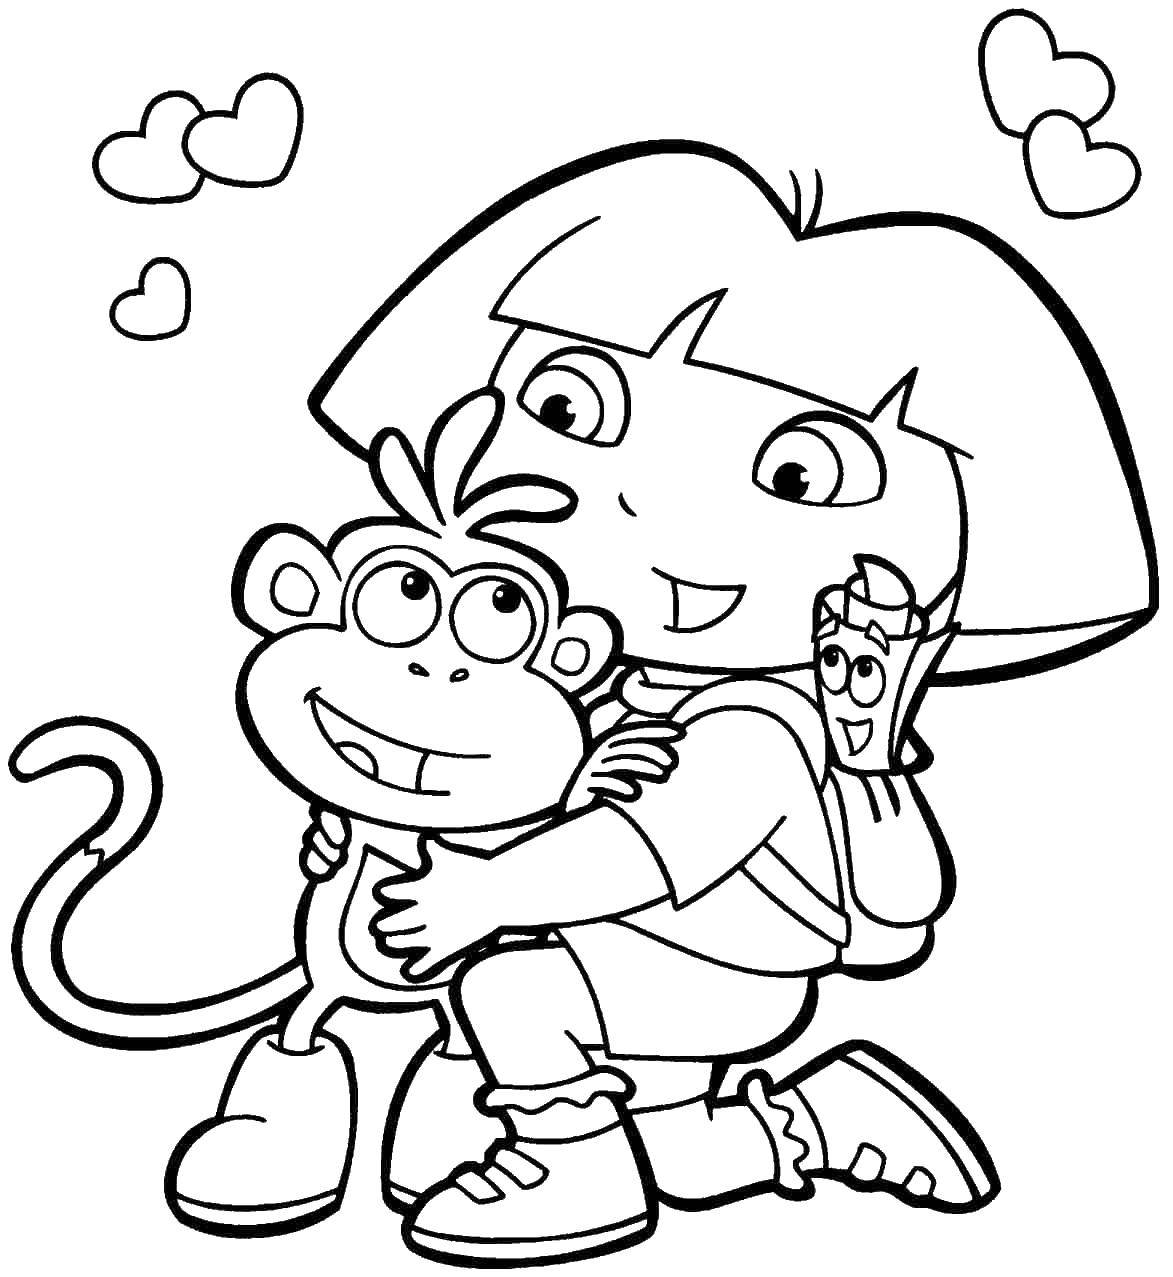 Раскраска с персонажами Даши Путешественницы и ее другом Башмачком (мультфильмы, Даша, Башмачок)